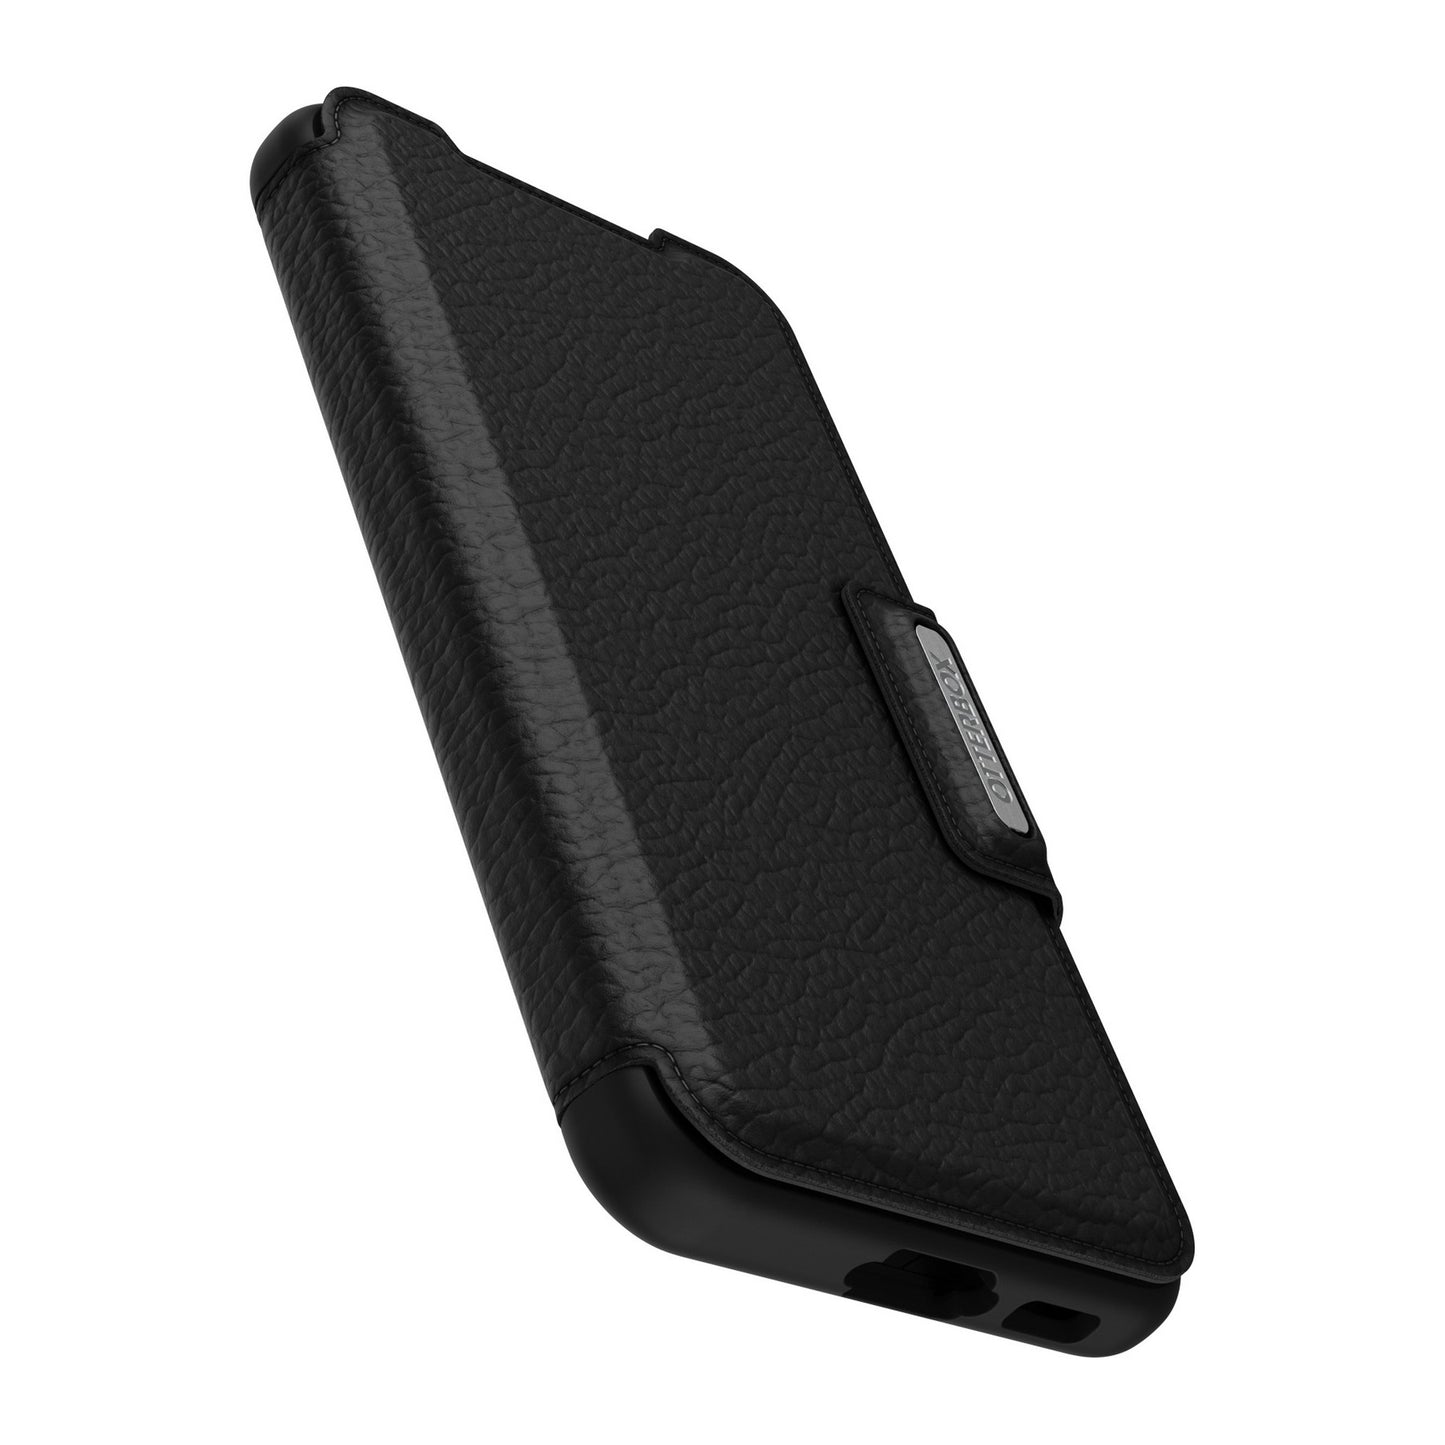 Samsung Galaxy S23 5G Otterbox Strada Leather Folio Case - Black (Shadow) - 15-10809